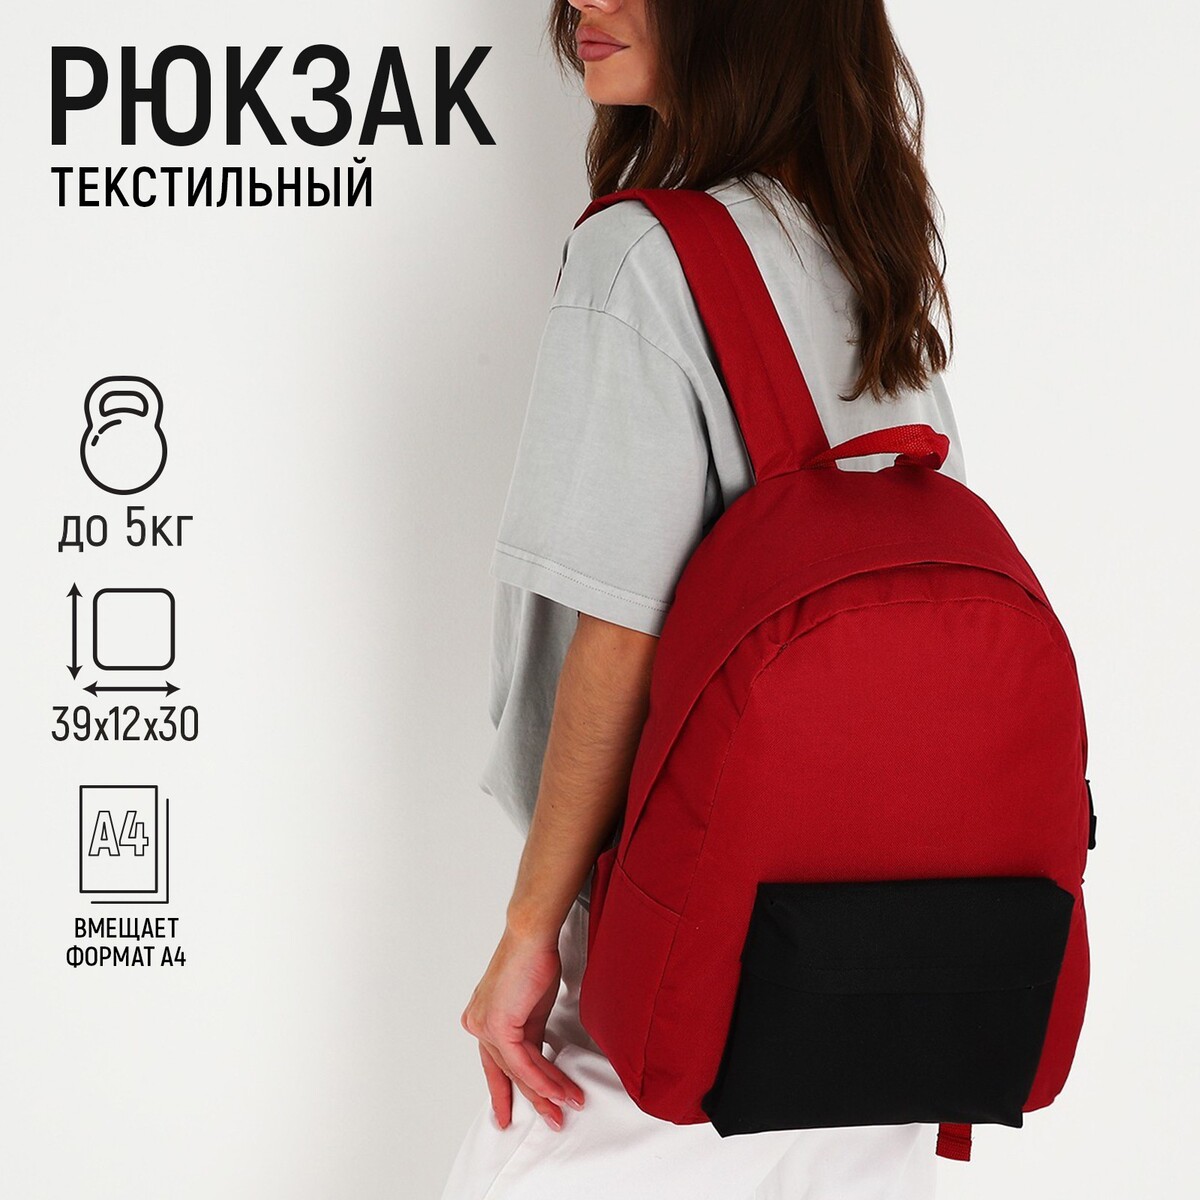 Рюкзак текстильный с цветным карманом, 30х39х12 см, бордовый/черный NAZAMOK